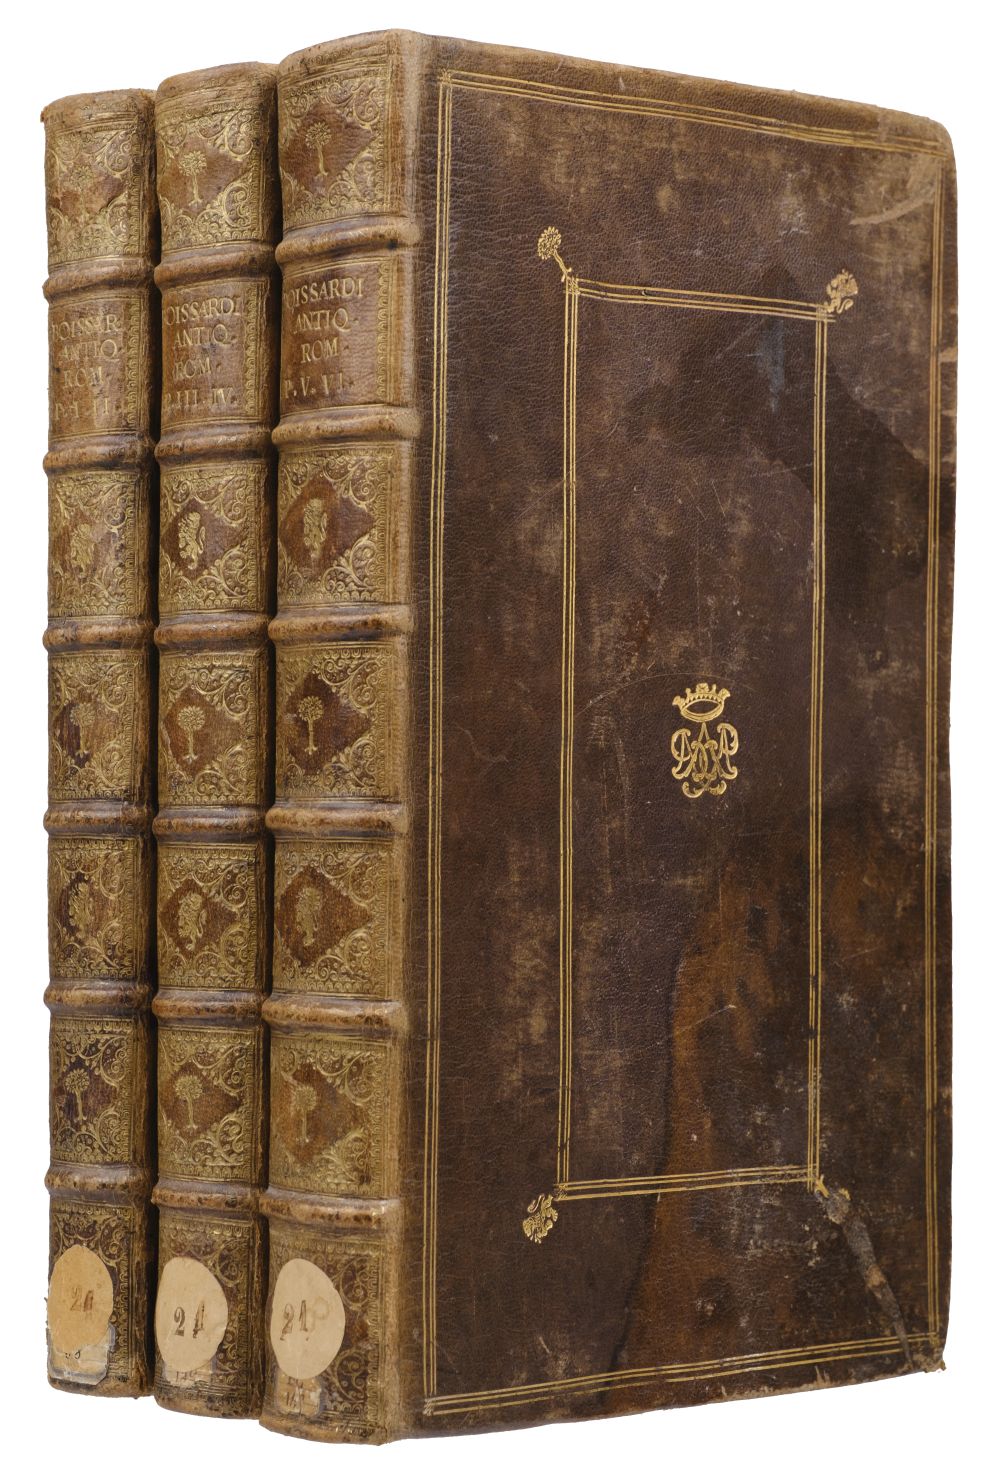 Boissard (Jean-Jacques, Theodor De Bry). Romanae Urbis topographiae et antiquitatum, 6 parts in 3 - Image 2 of 2